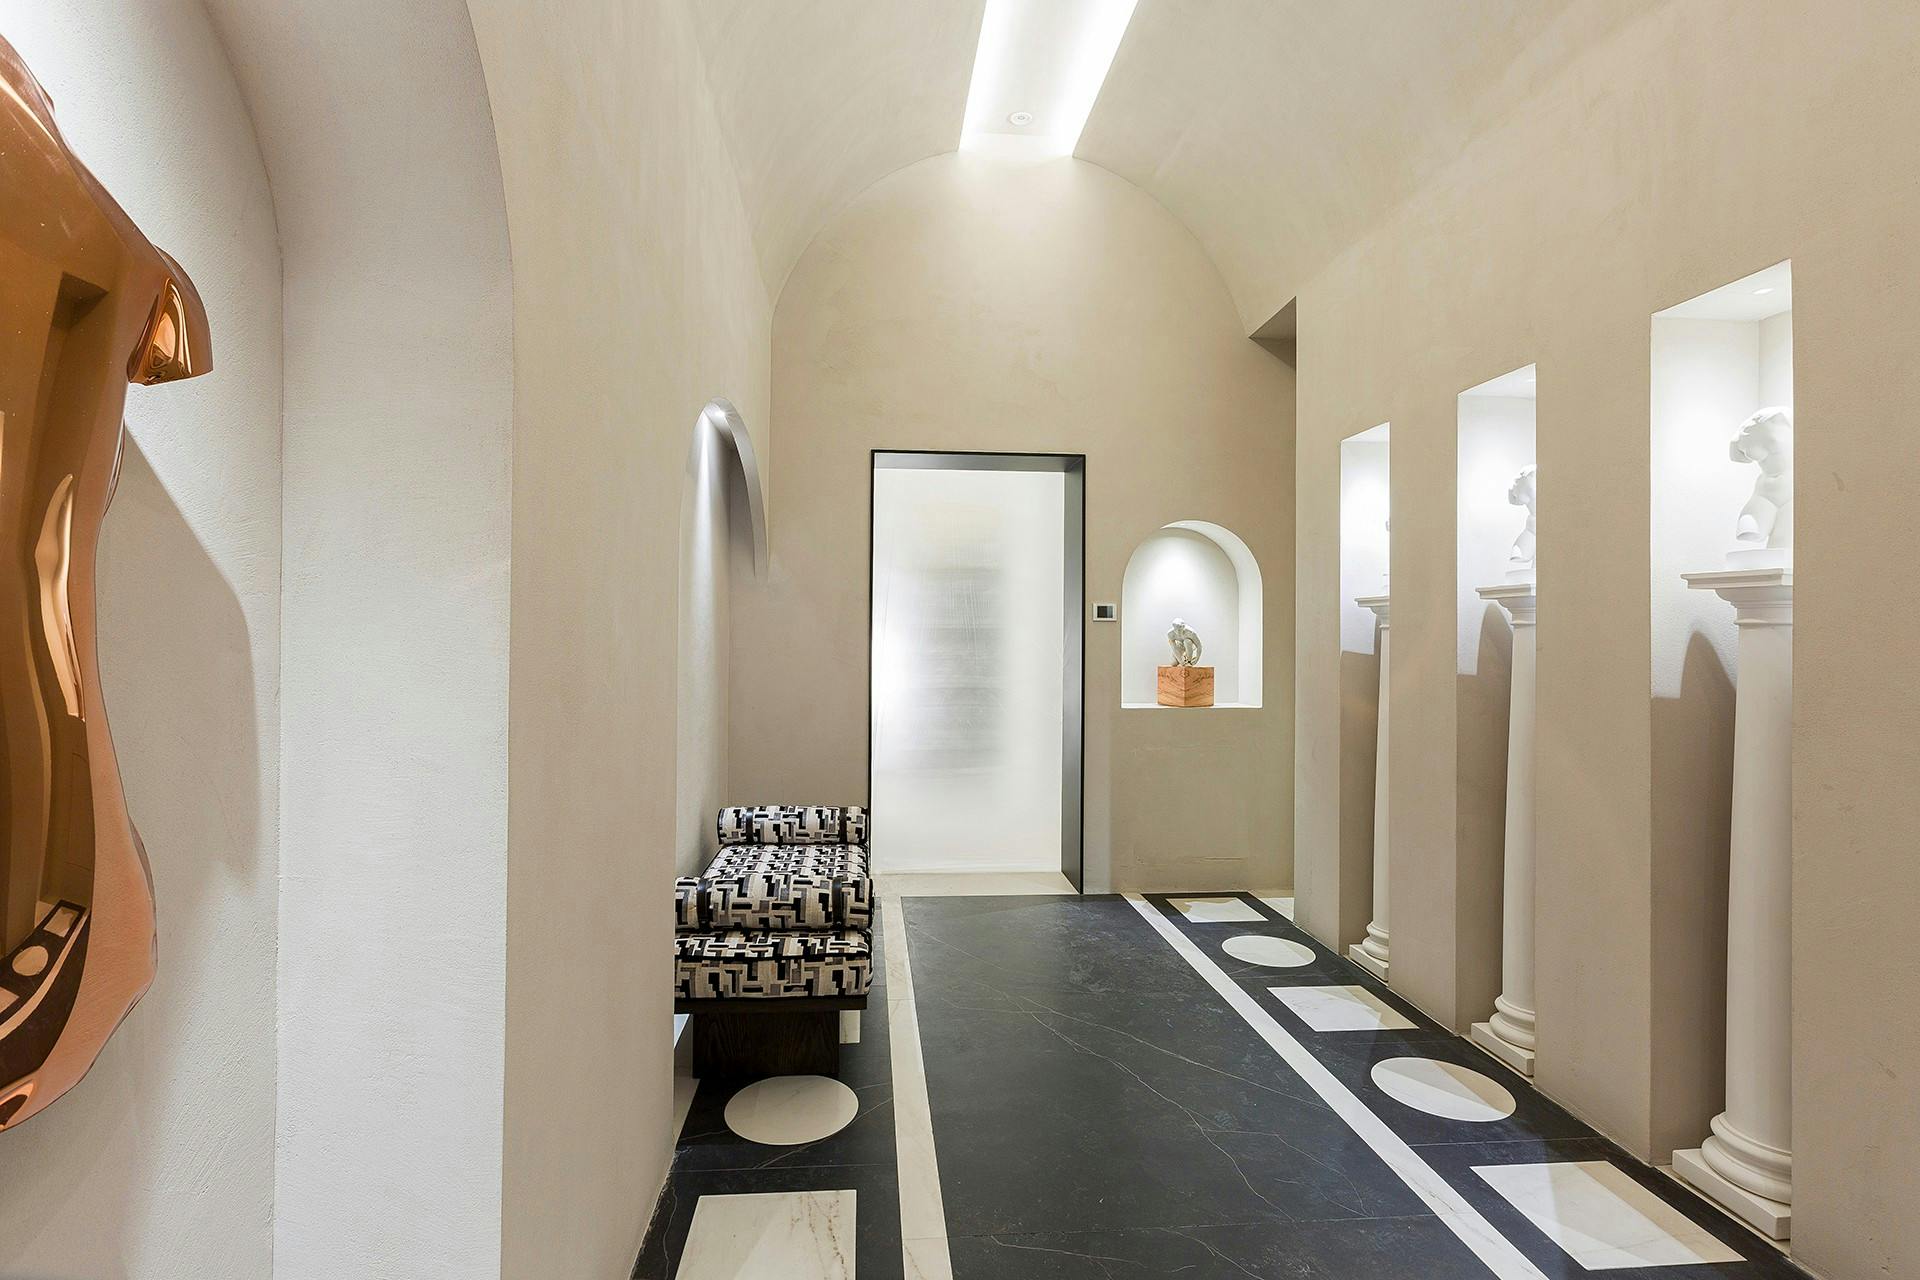 Bildnummer 36 des aktuellen Abschnitts von A contemporary public toilet design inspired by Roman public baths von Cosentino Österreich